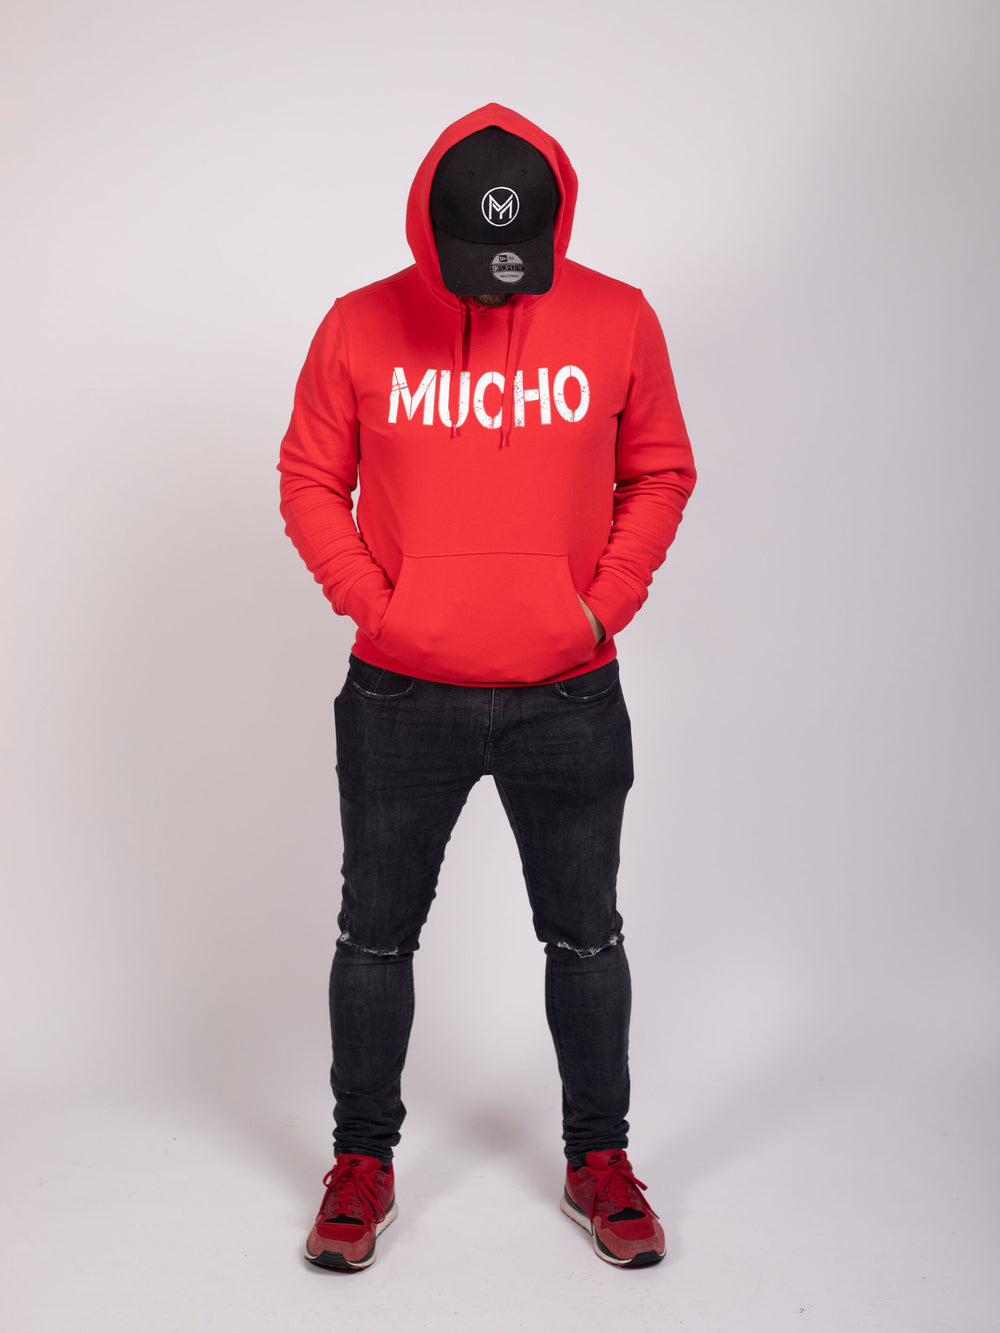 Homme en sweat à capuche rouge avec logo Mucho imprimé et pantalon noir